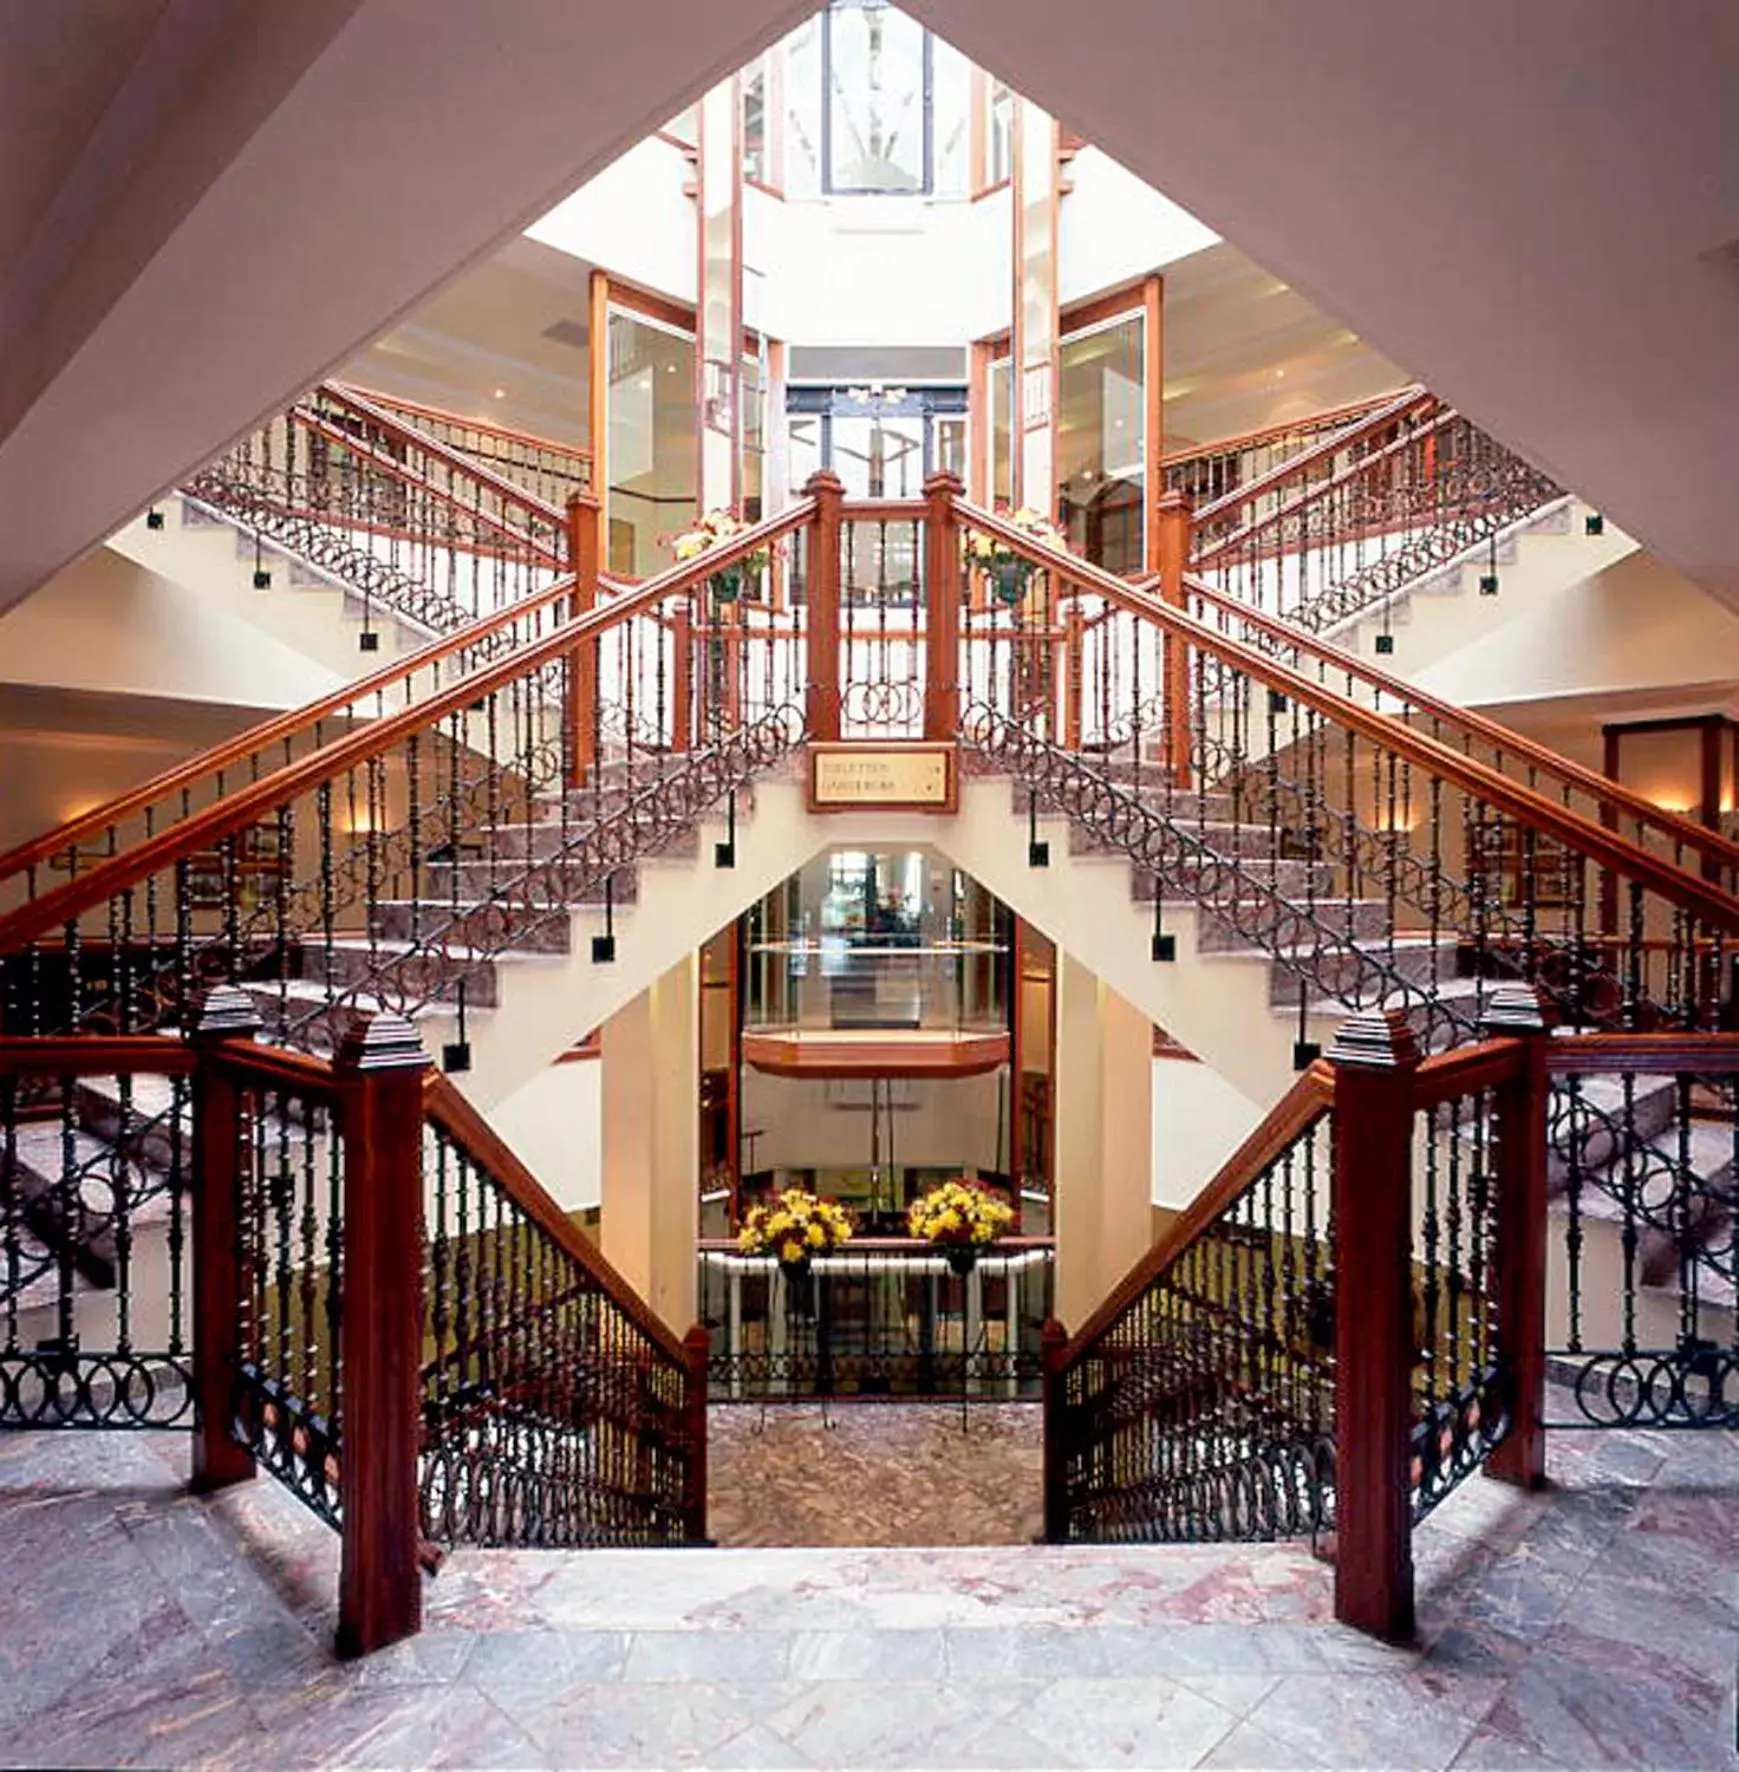 Lobby or reception in Hotel Gladbeck van der Valk